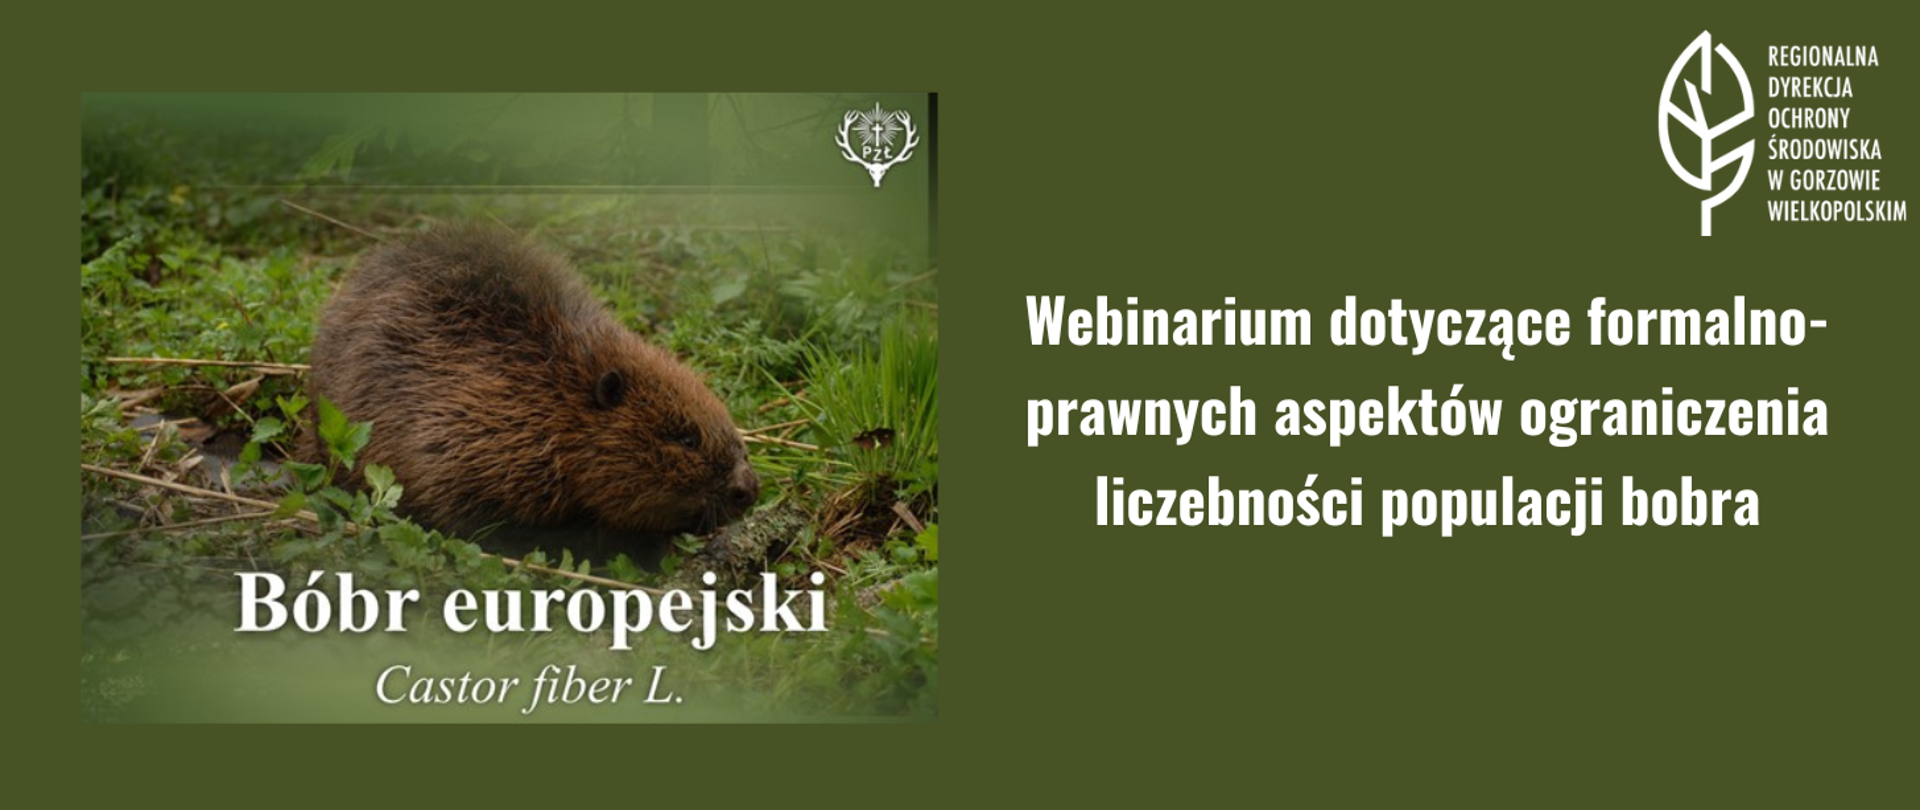 Po lewej stornie zdjęcie przedstawiające bobra europejskiego, po prawej stronie napis: Webinarium dotyczące formalno-prawnych aspektów ograniczenia liczebności populacji bobra. W prawym górnym rogu biały liść.